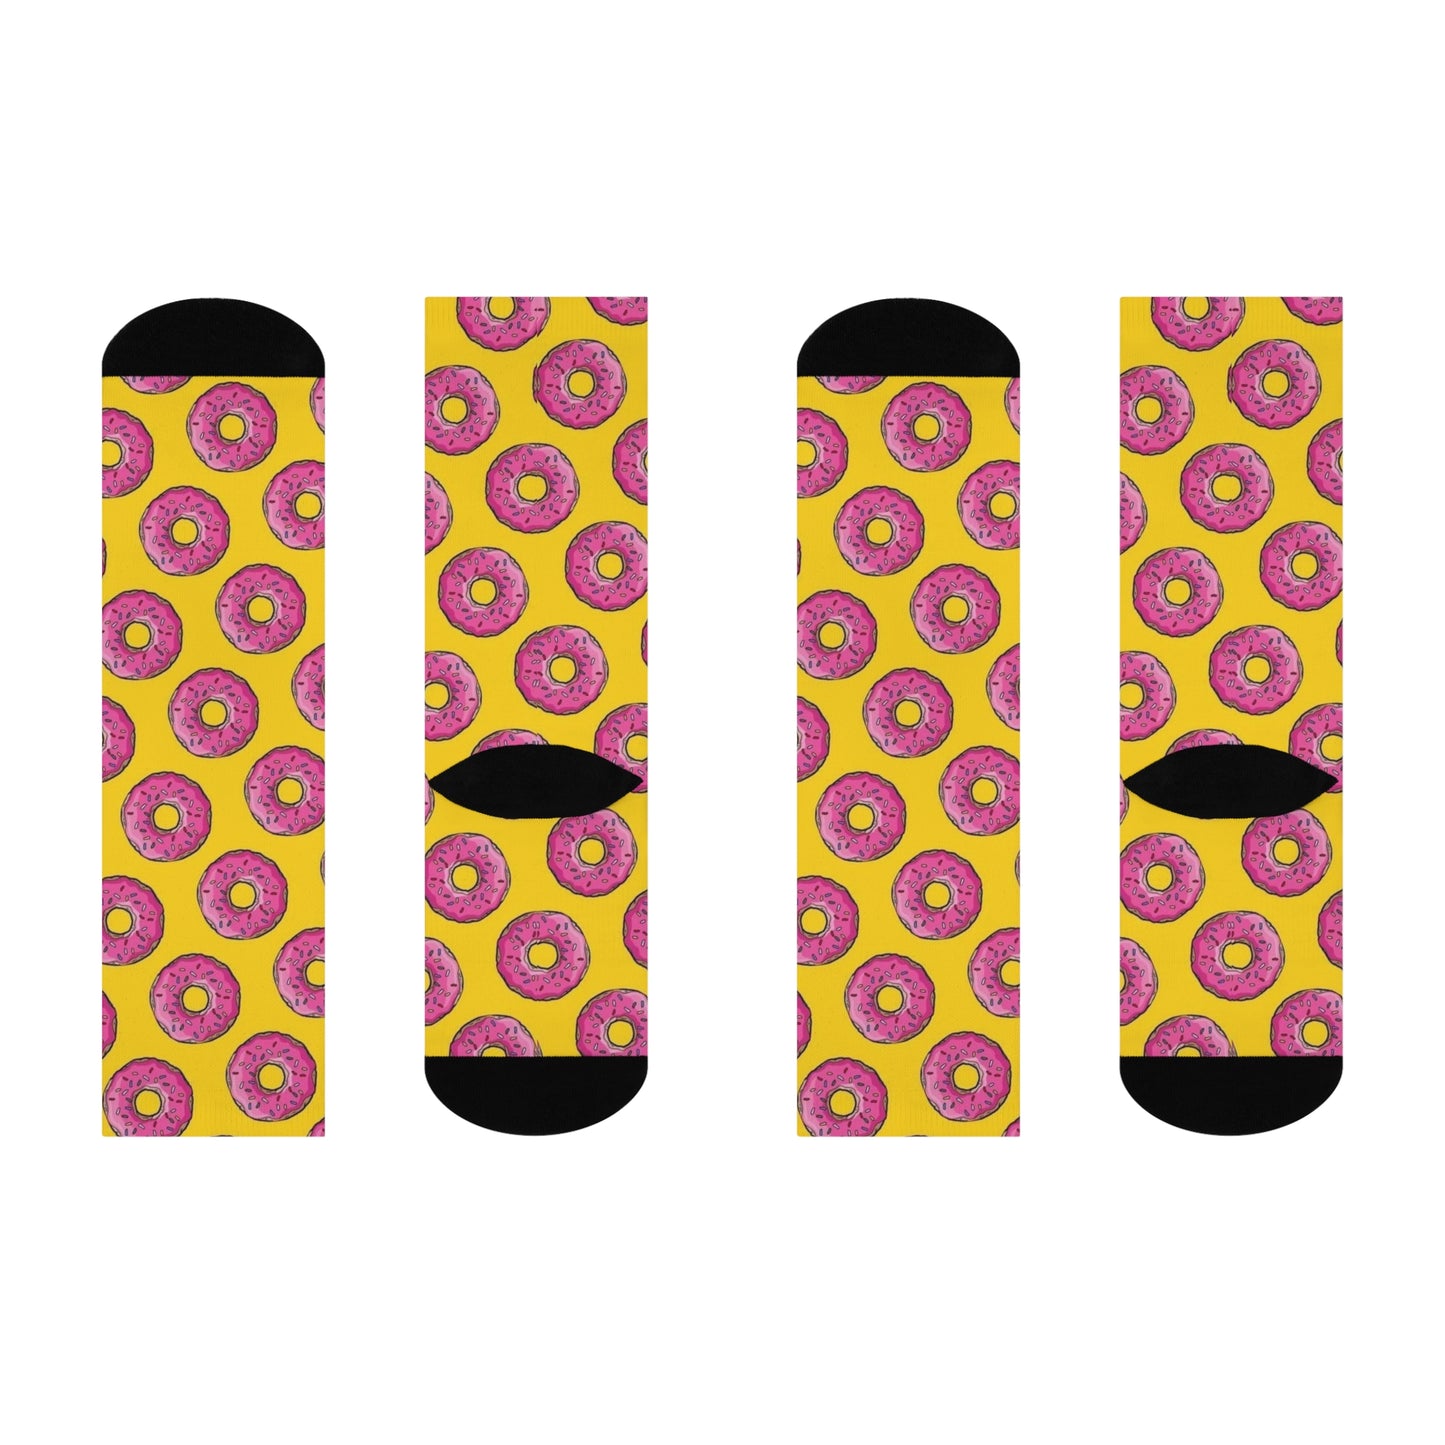 Donuts Pattern socks